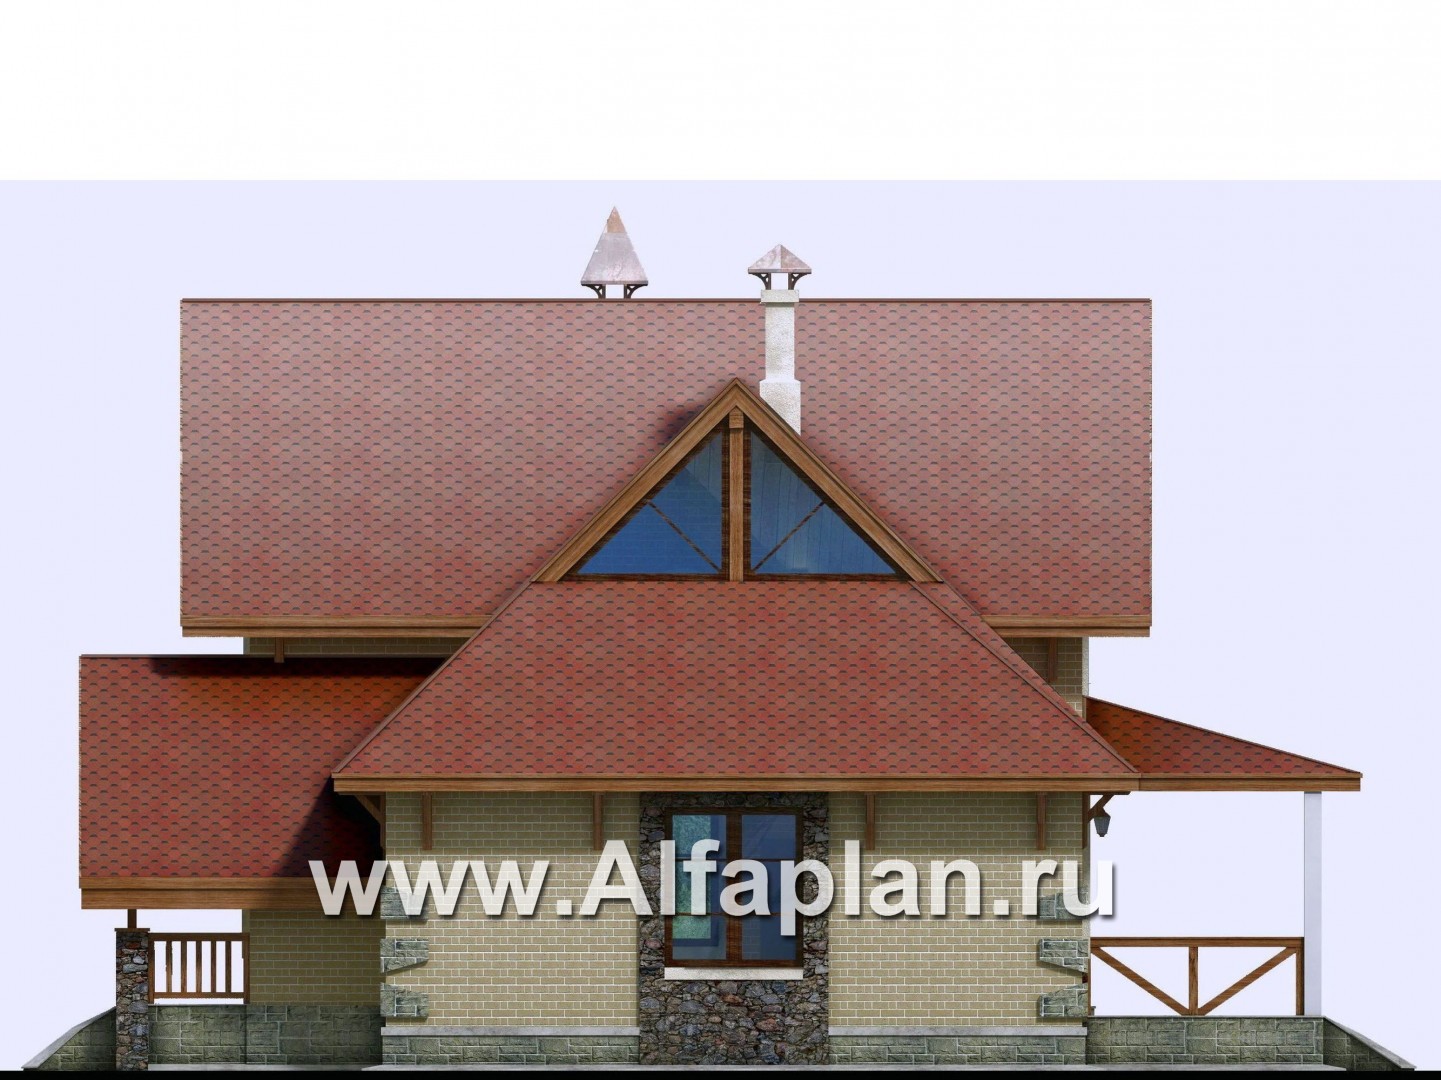 «Альпенхаус» - проект дома с мансардой, высокий потолок в гостиной, в стиле шале - фасад дома